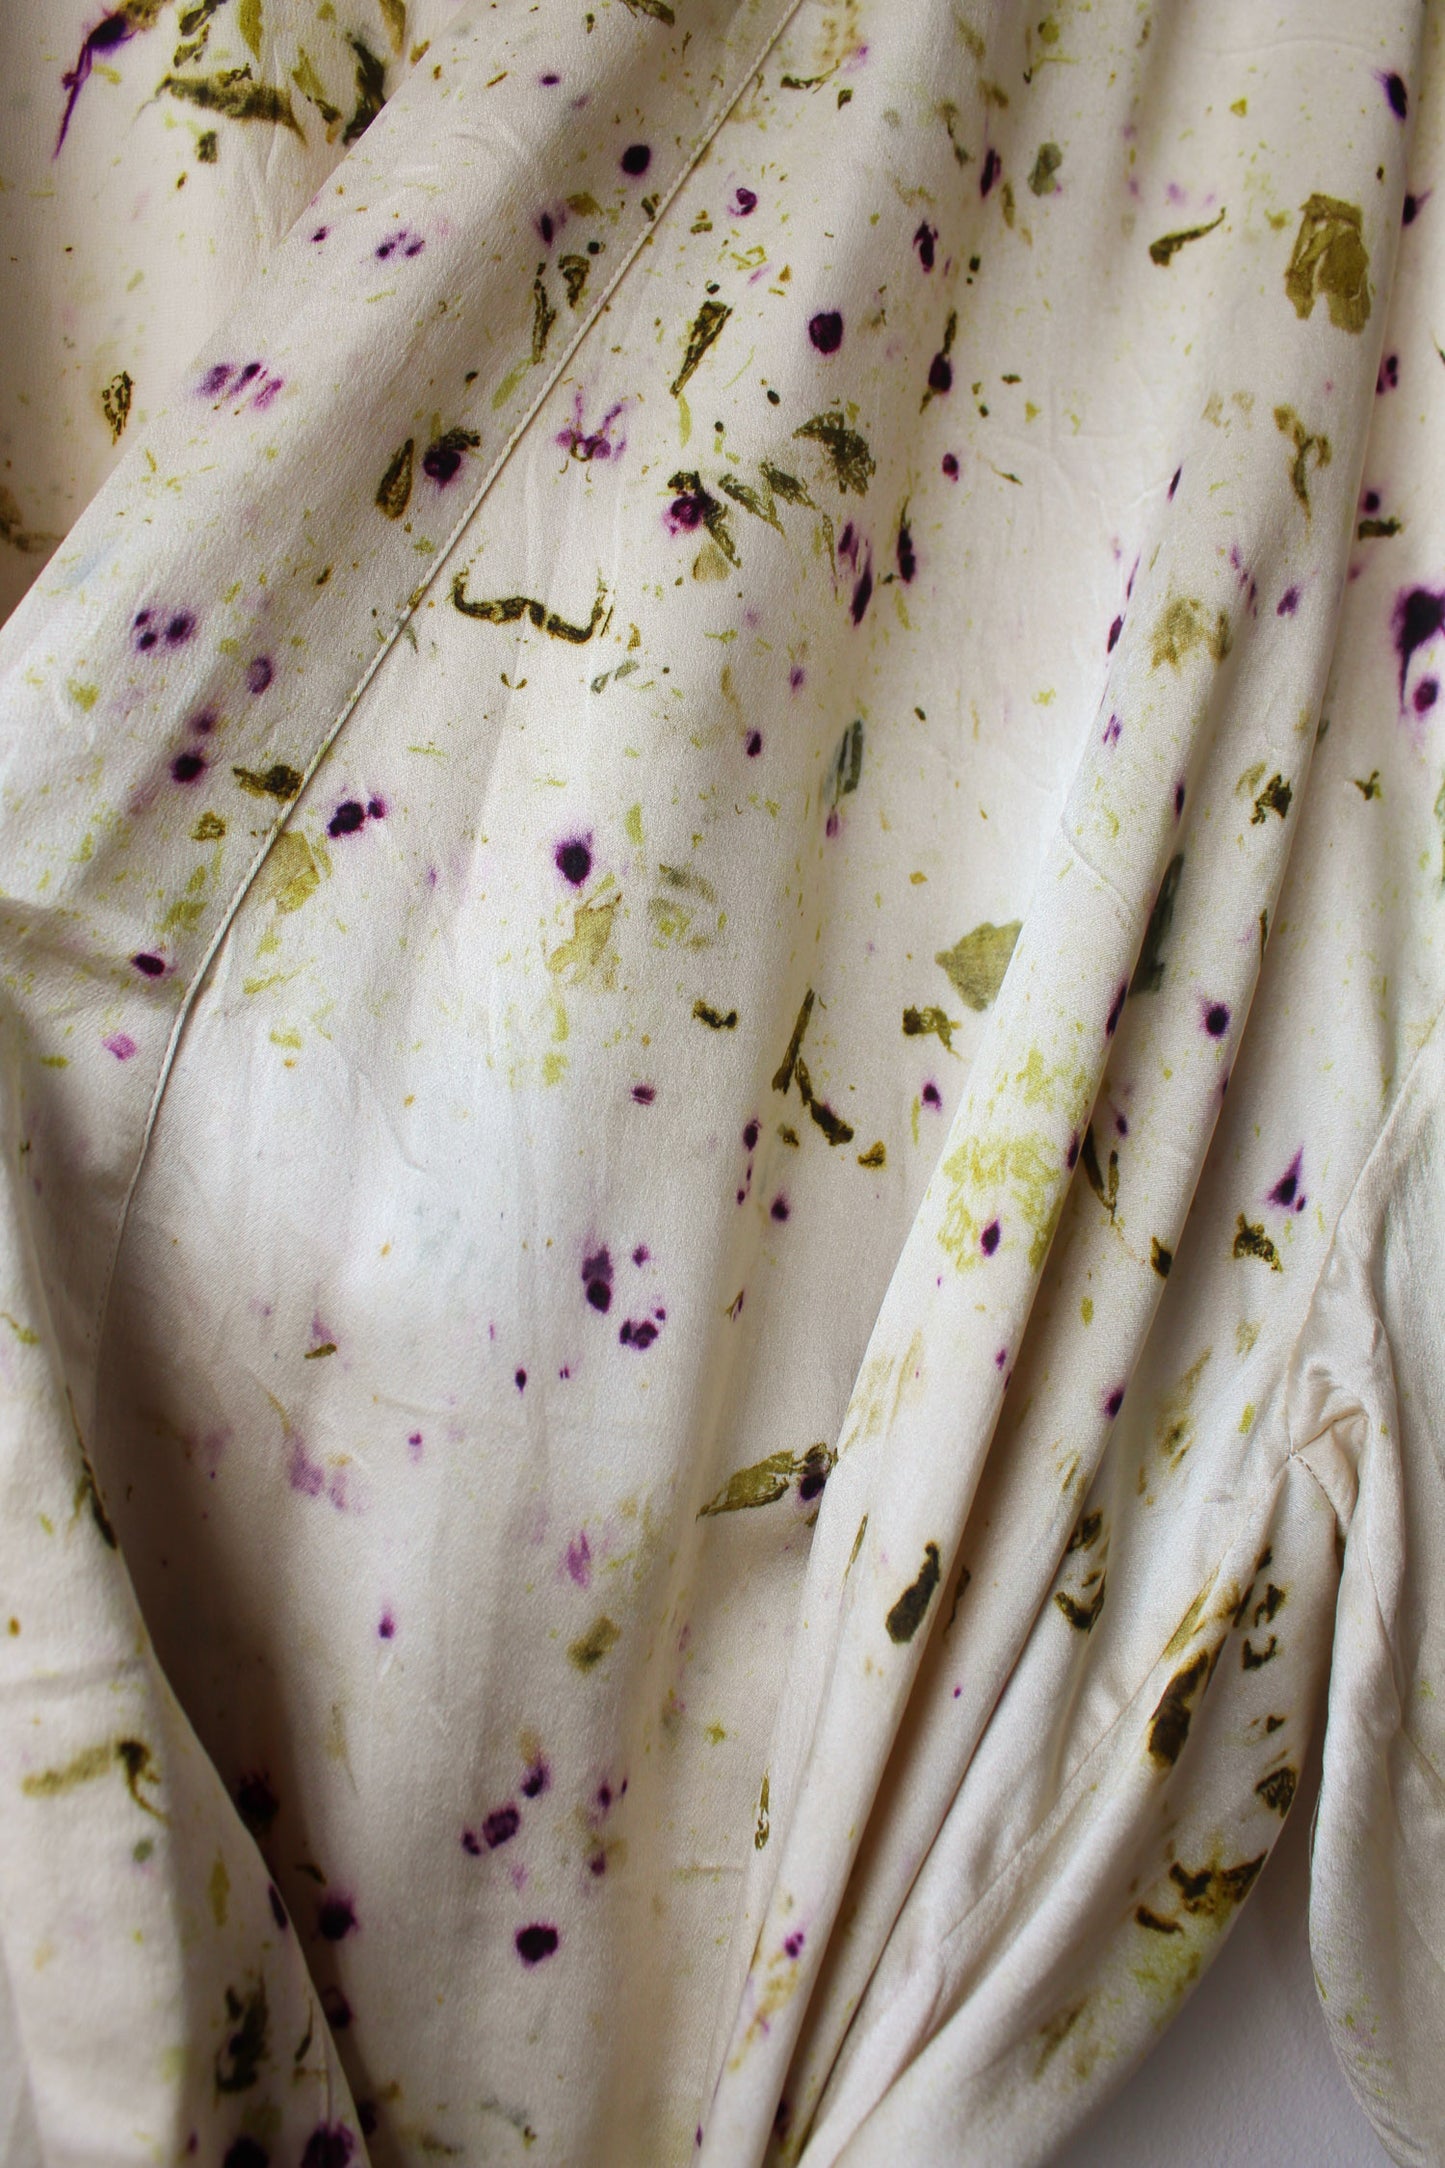 Midsummer Night's Dream Silk Robe